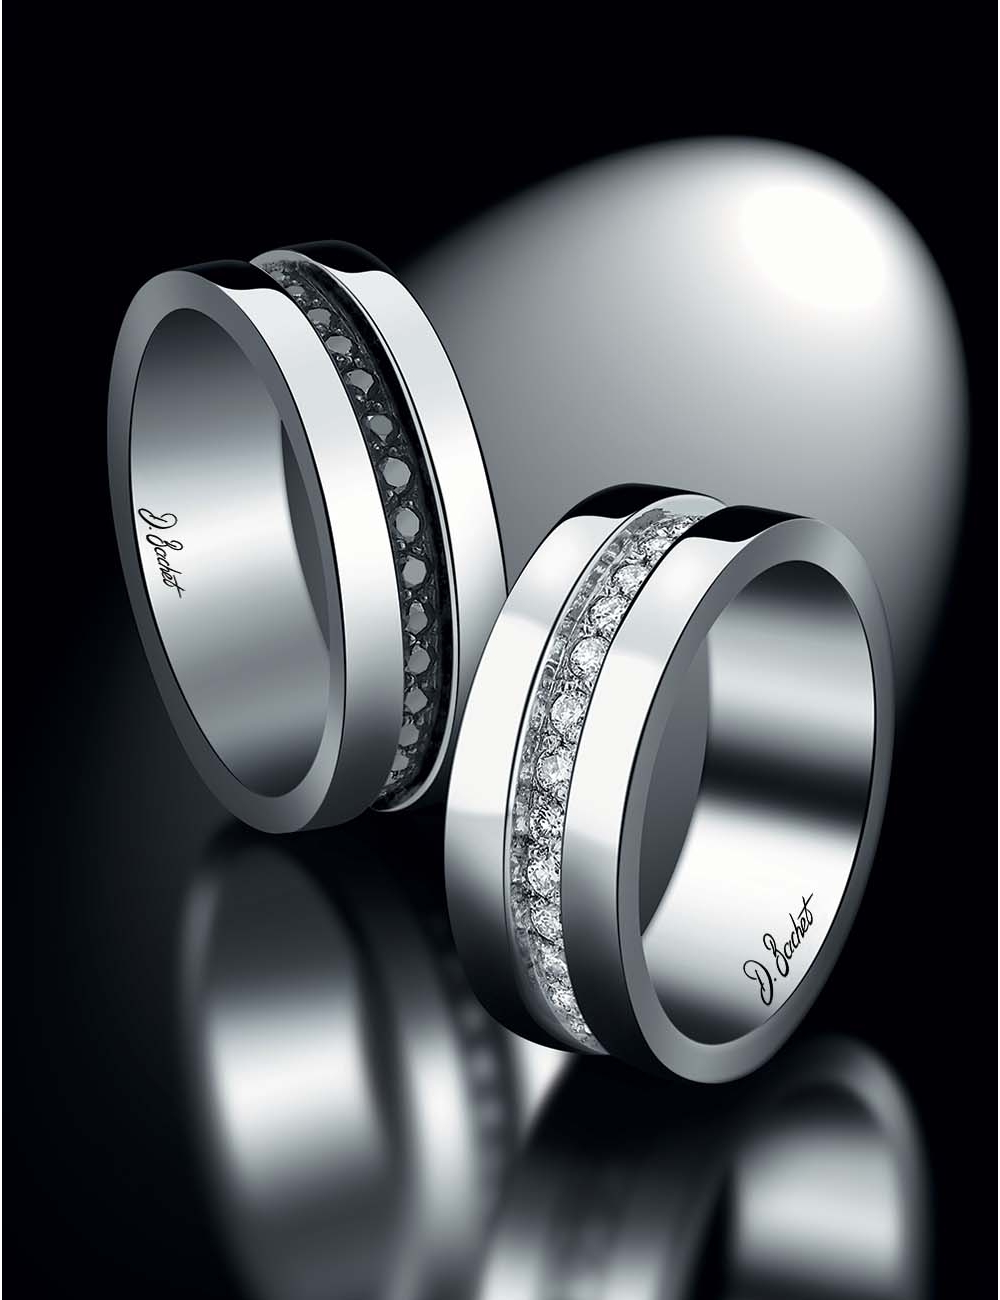 Alliance homme 7 mm en platine avec diamants noirs, design contemporain masculin, confortable, aussi avec diamants blancs.